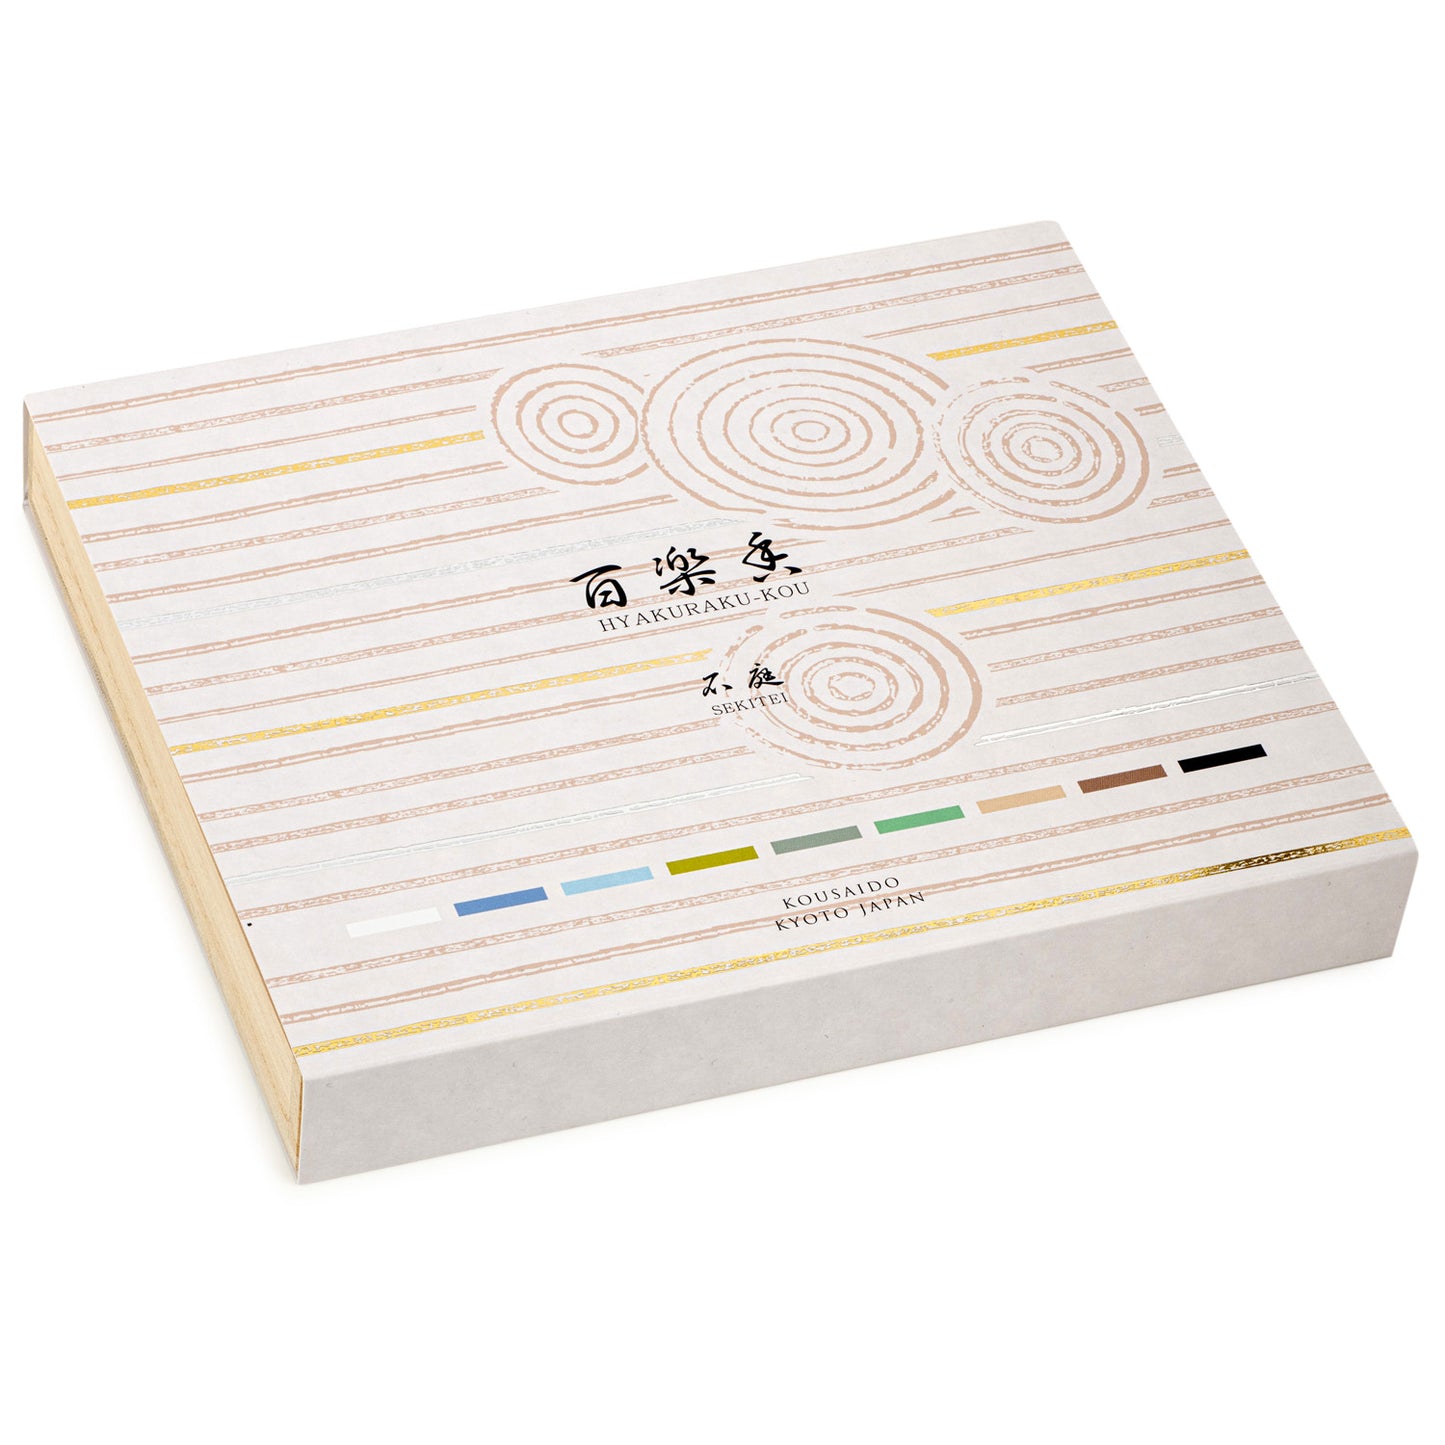 Sekitei Organic Japanese Incense Gift Set